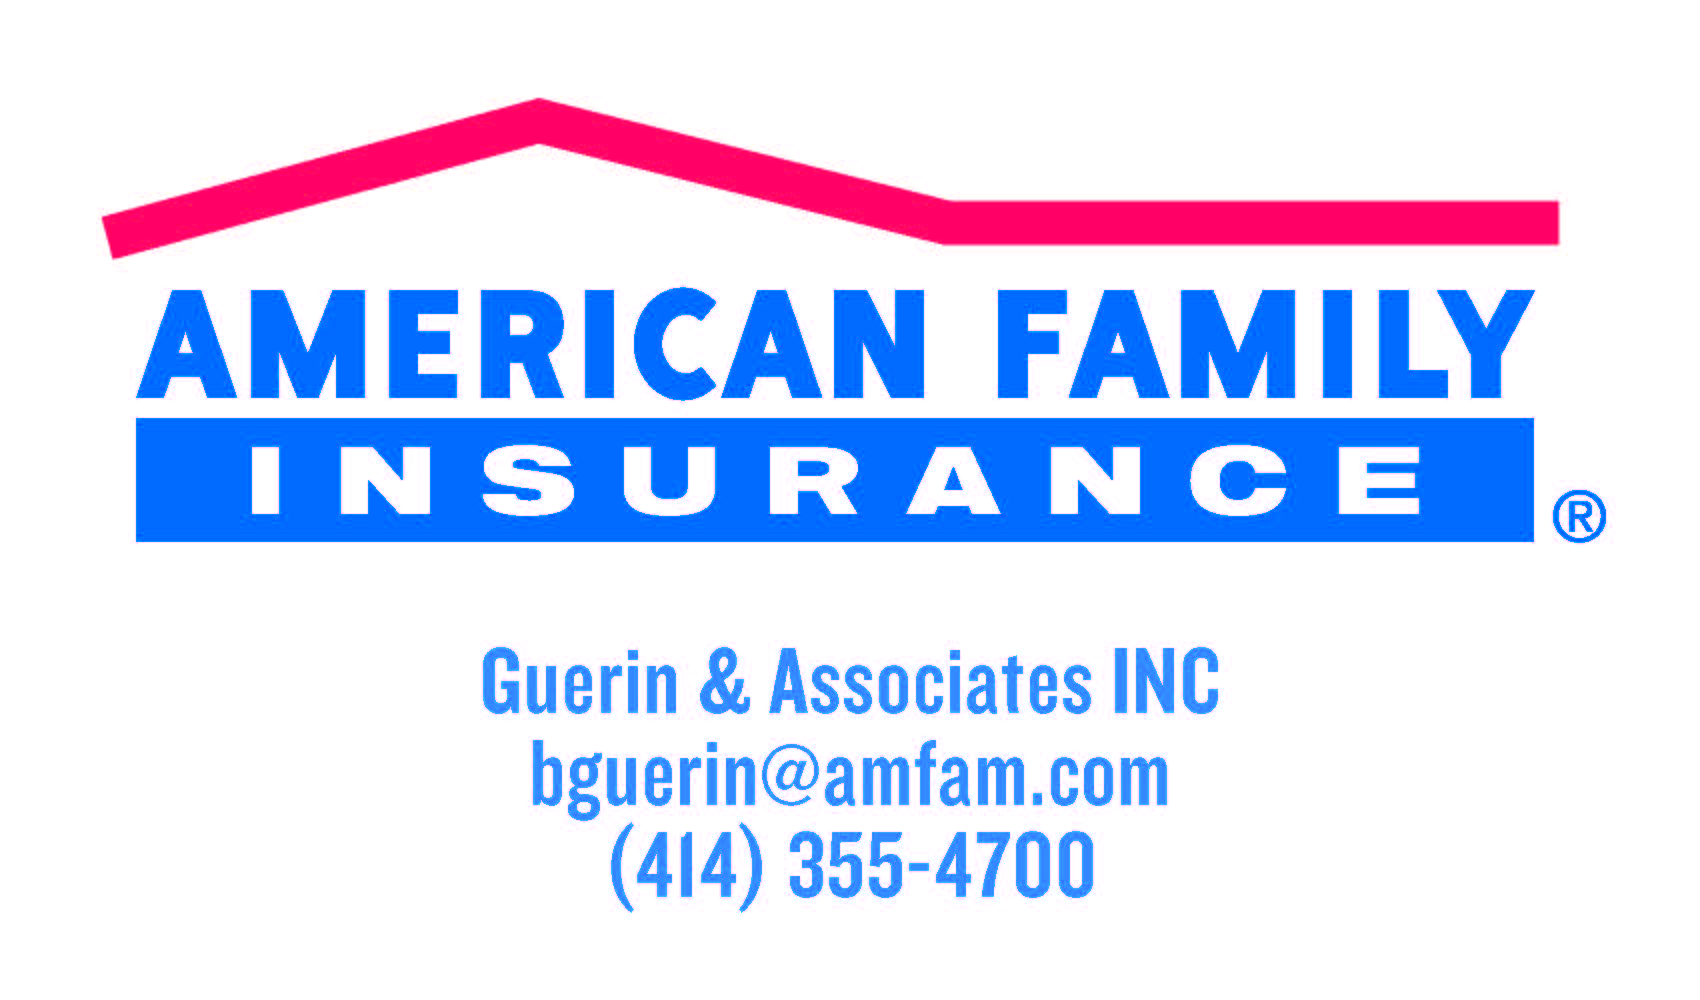 Guerin & Associates, Inc